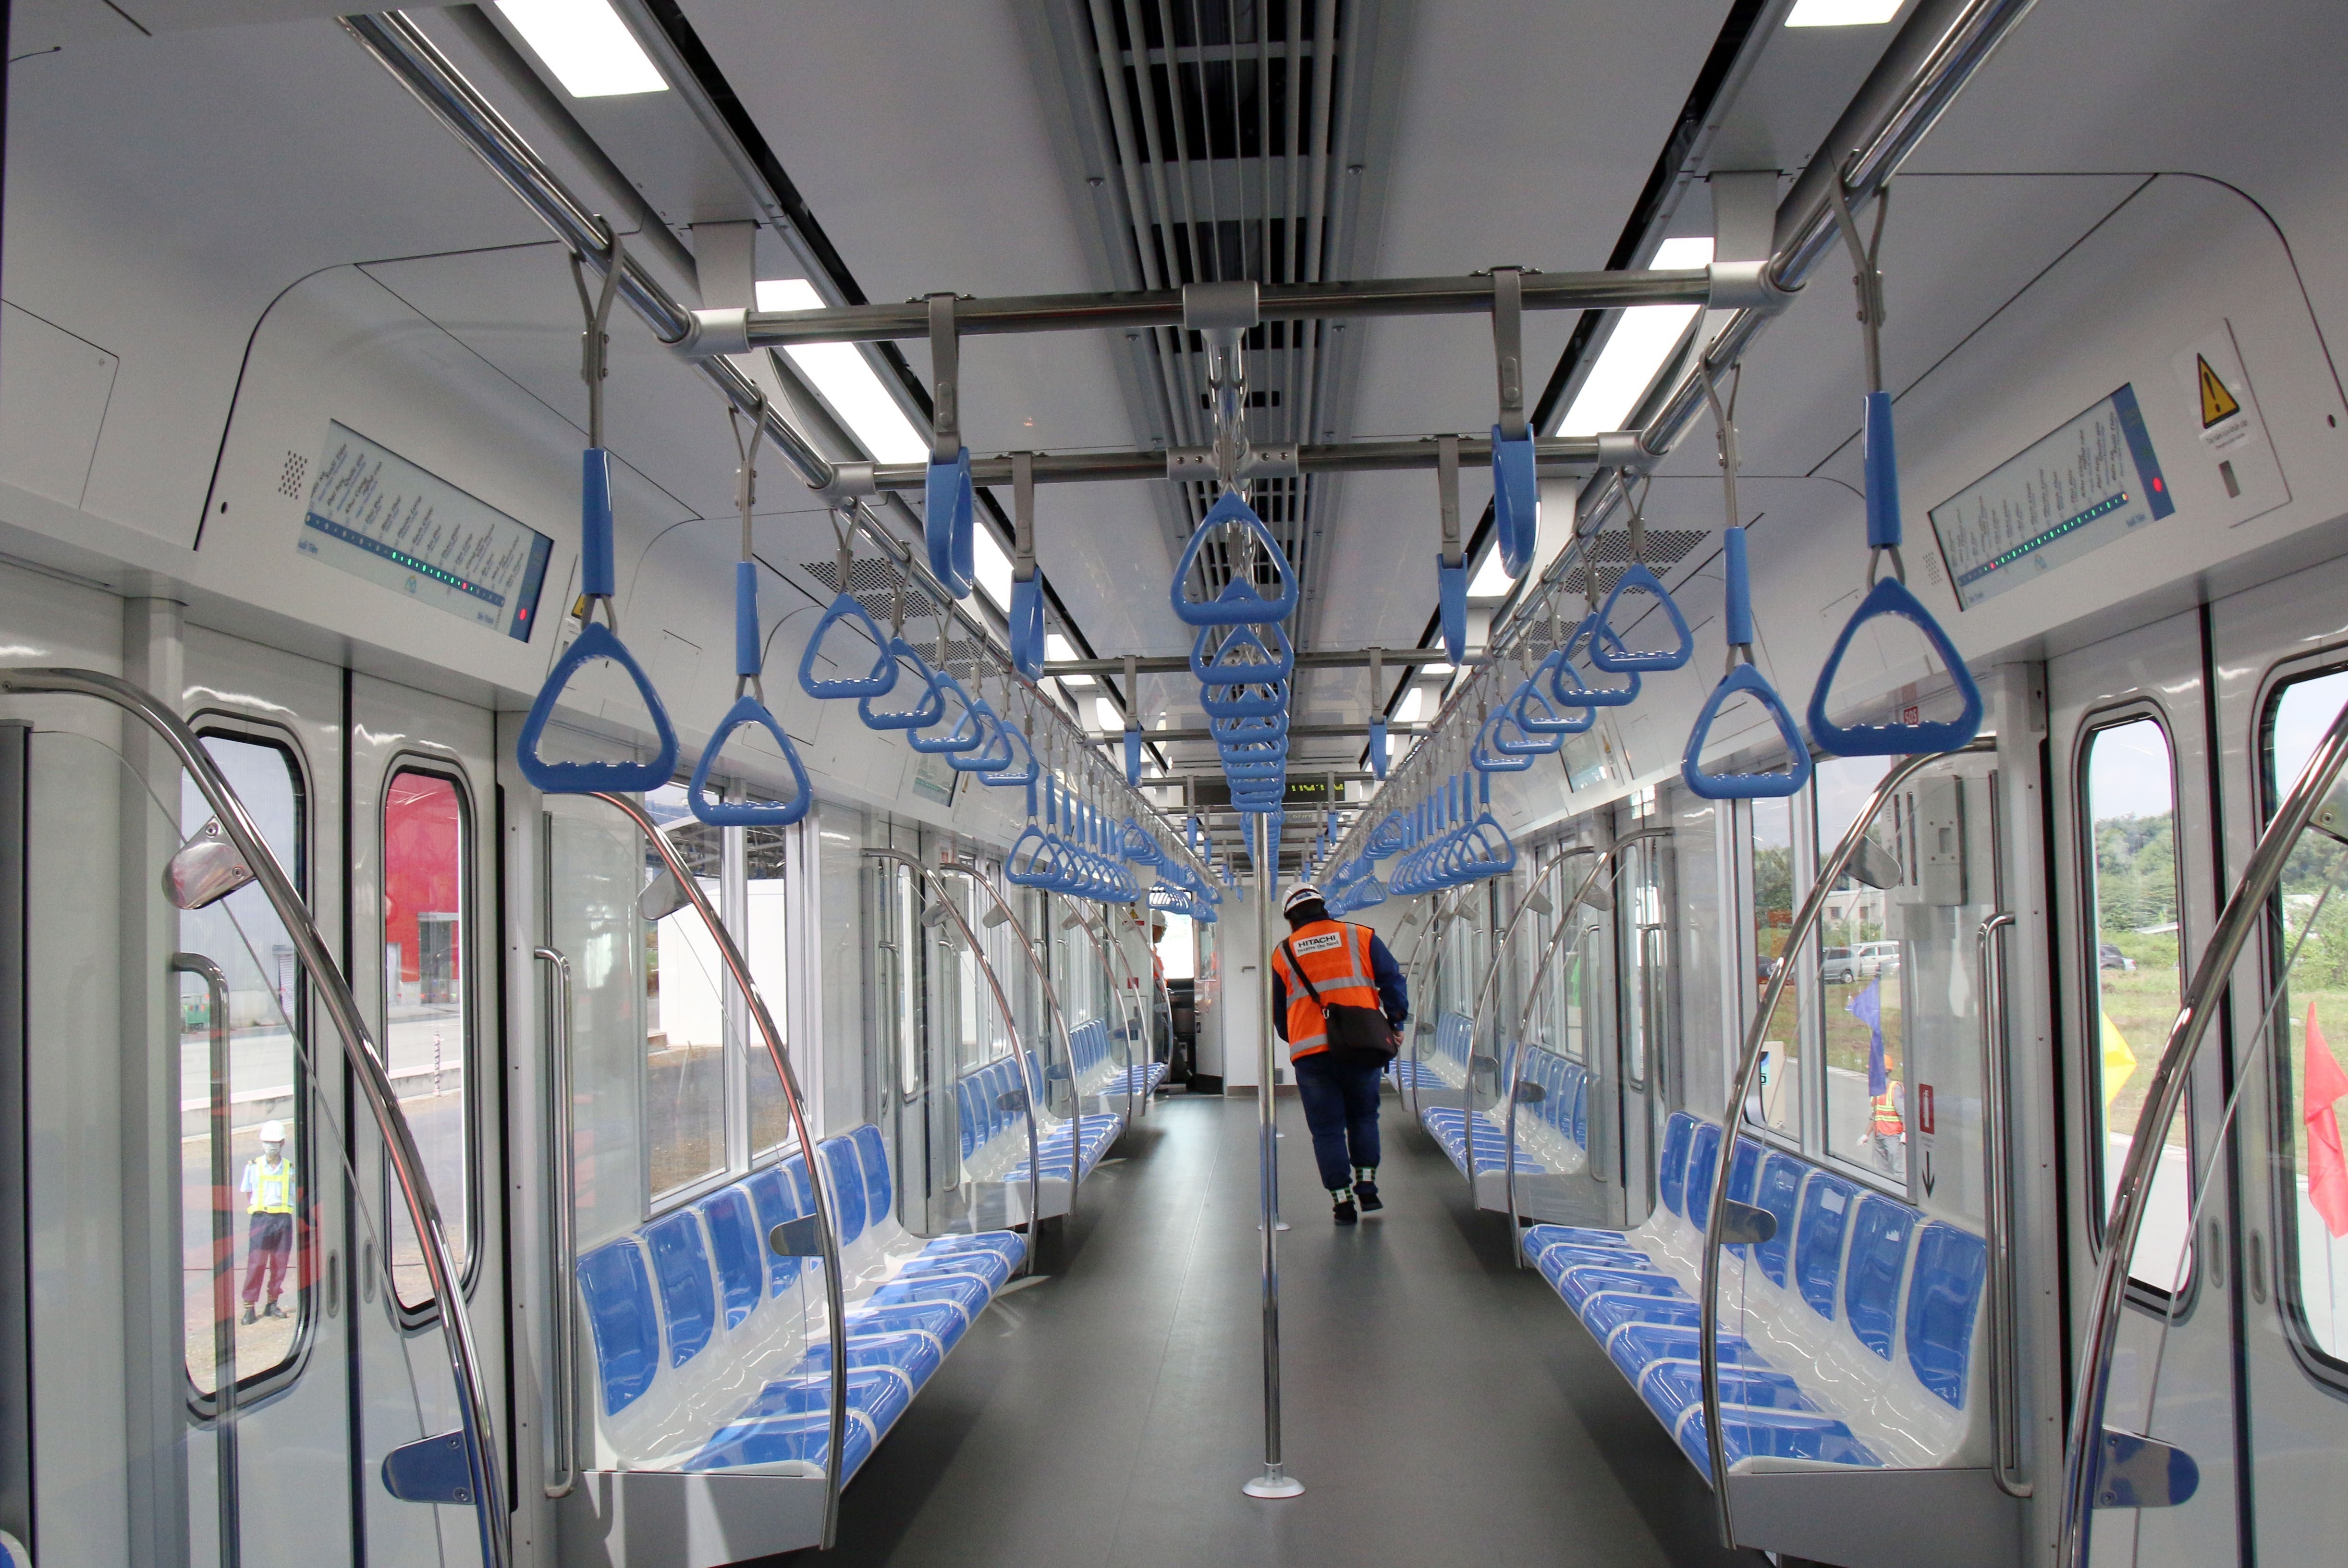 Khoang chở khách trên toa xe của tuyến metro số 1 Bến Thành-Suối Tiên. (Ảnh: Tiến Lực/TTXVN)